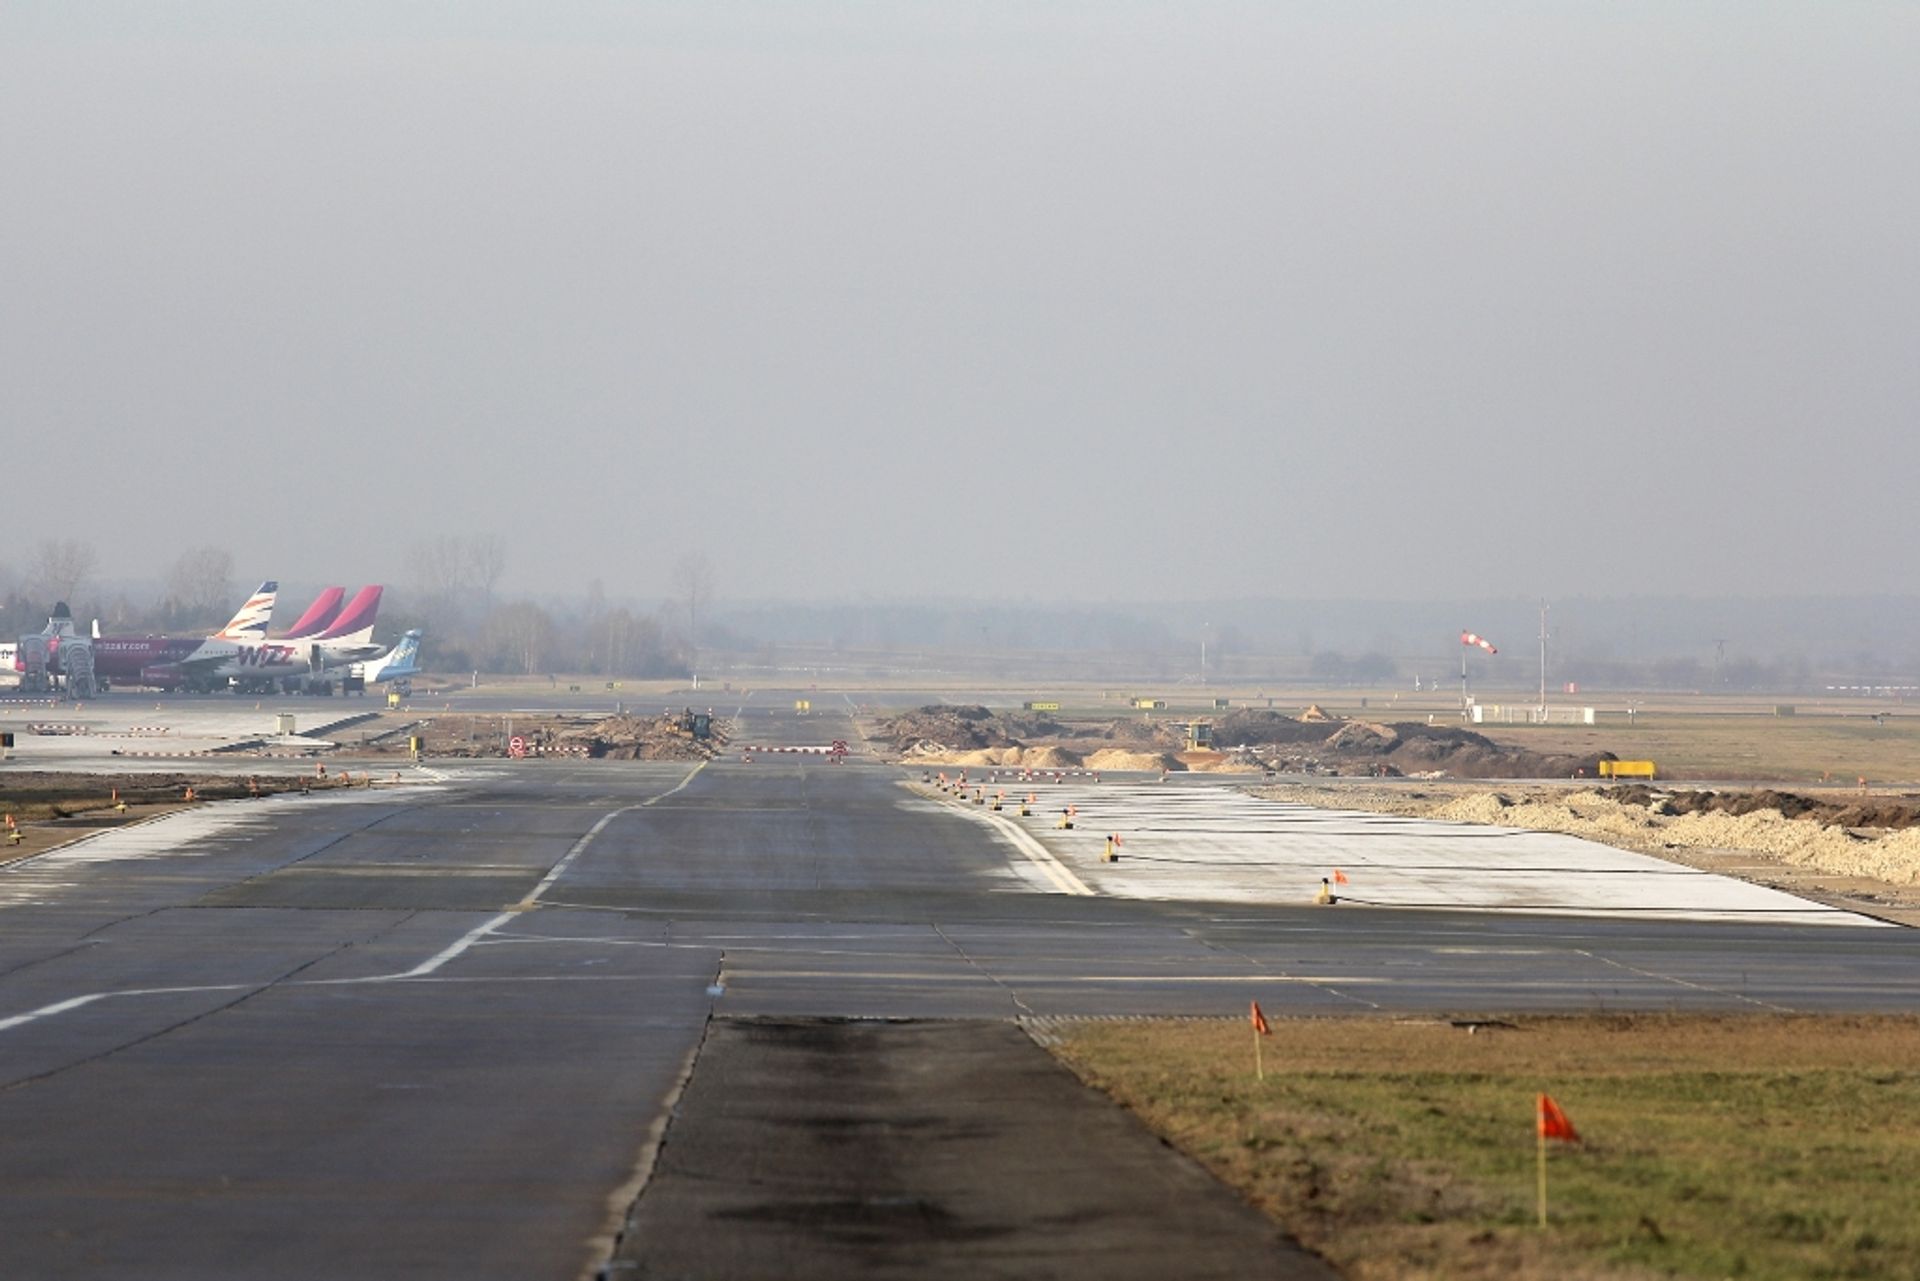  Rozbudowa i modernizacja Katowice Airport: podsumowanie działań w 2012 roku